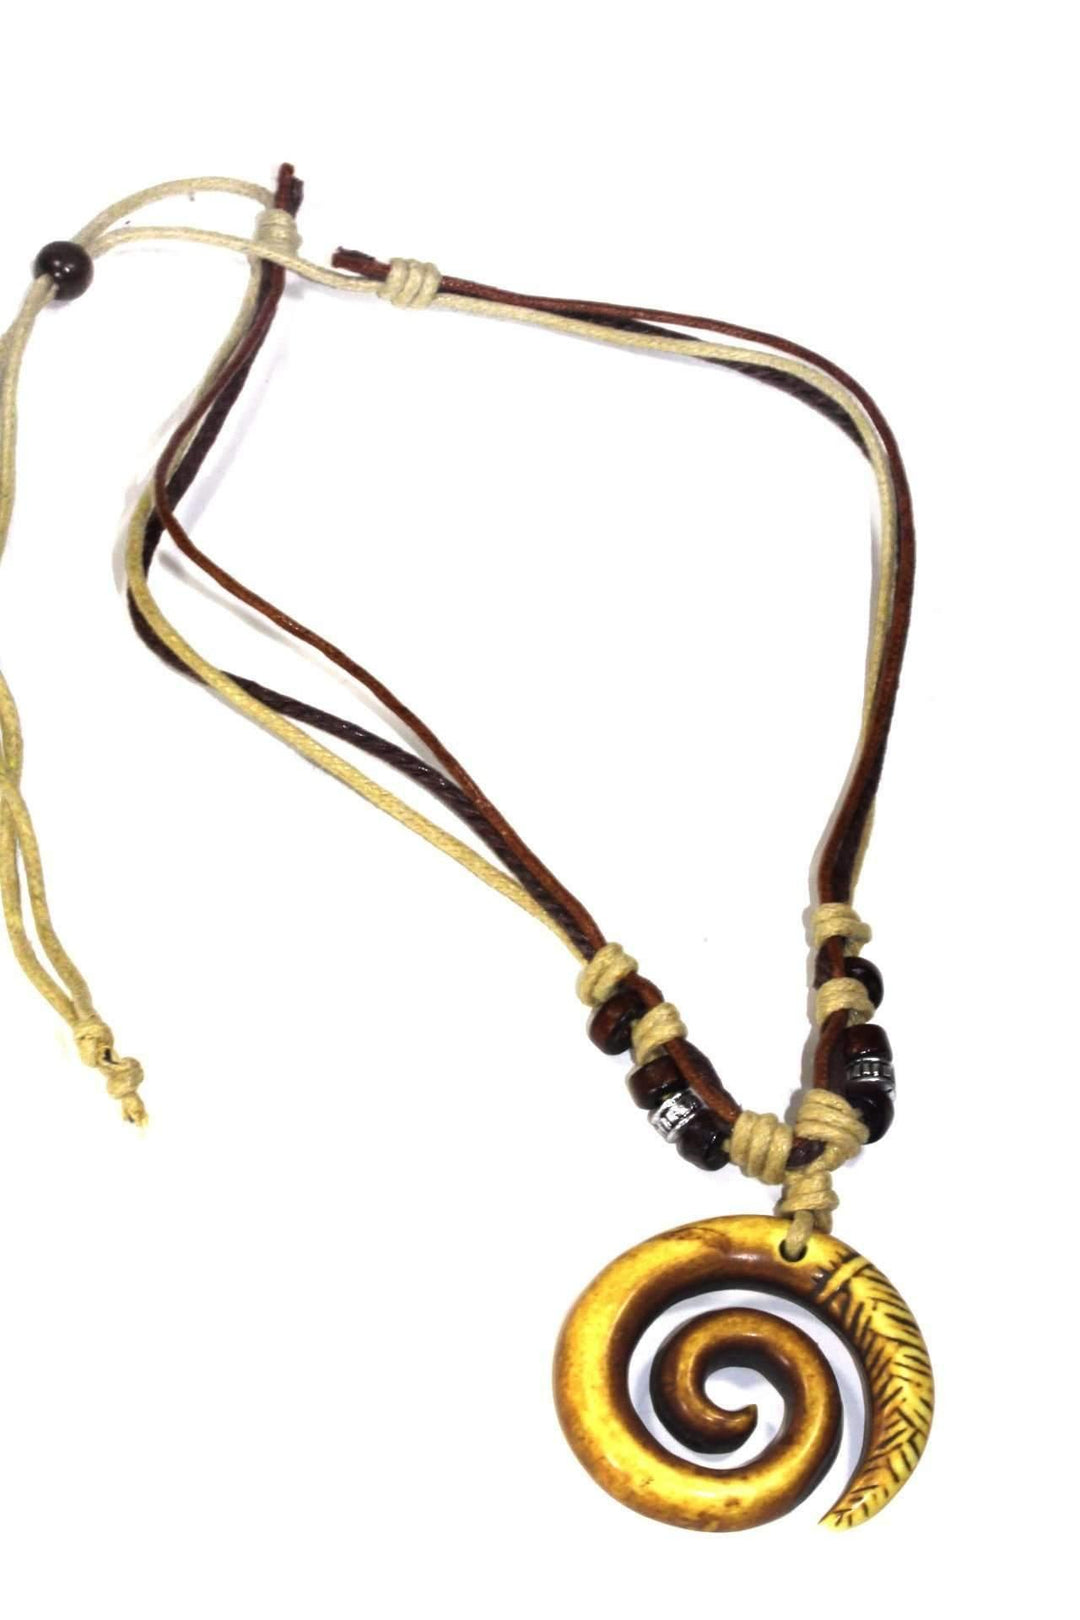 Tribal Spiral Boho Style Necklace - Brand My Case